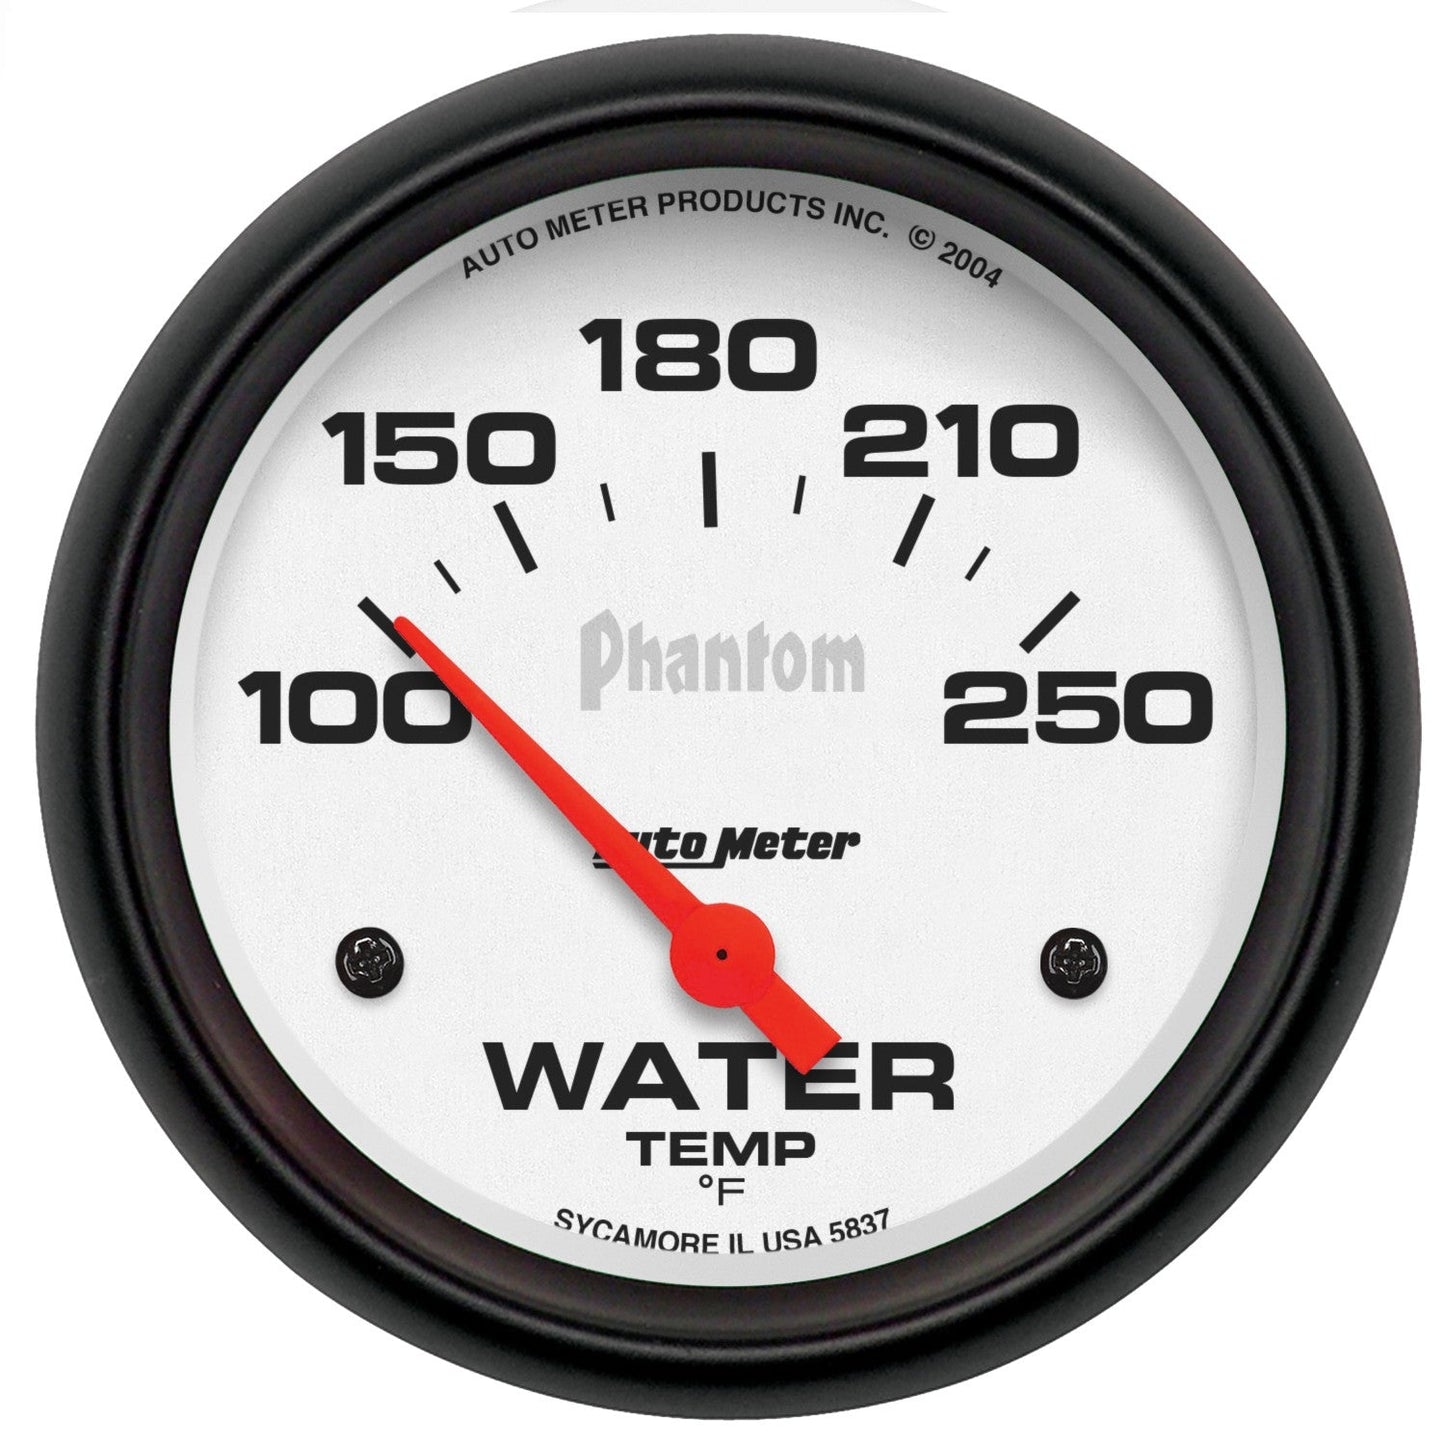 AutoMeter - 2-5/8" TEMPERATURA DA ÁGUA, 100-250 °F, AIR-CORE, PHANTOM (5837)